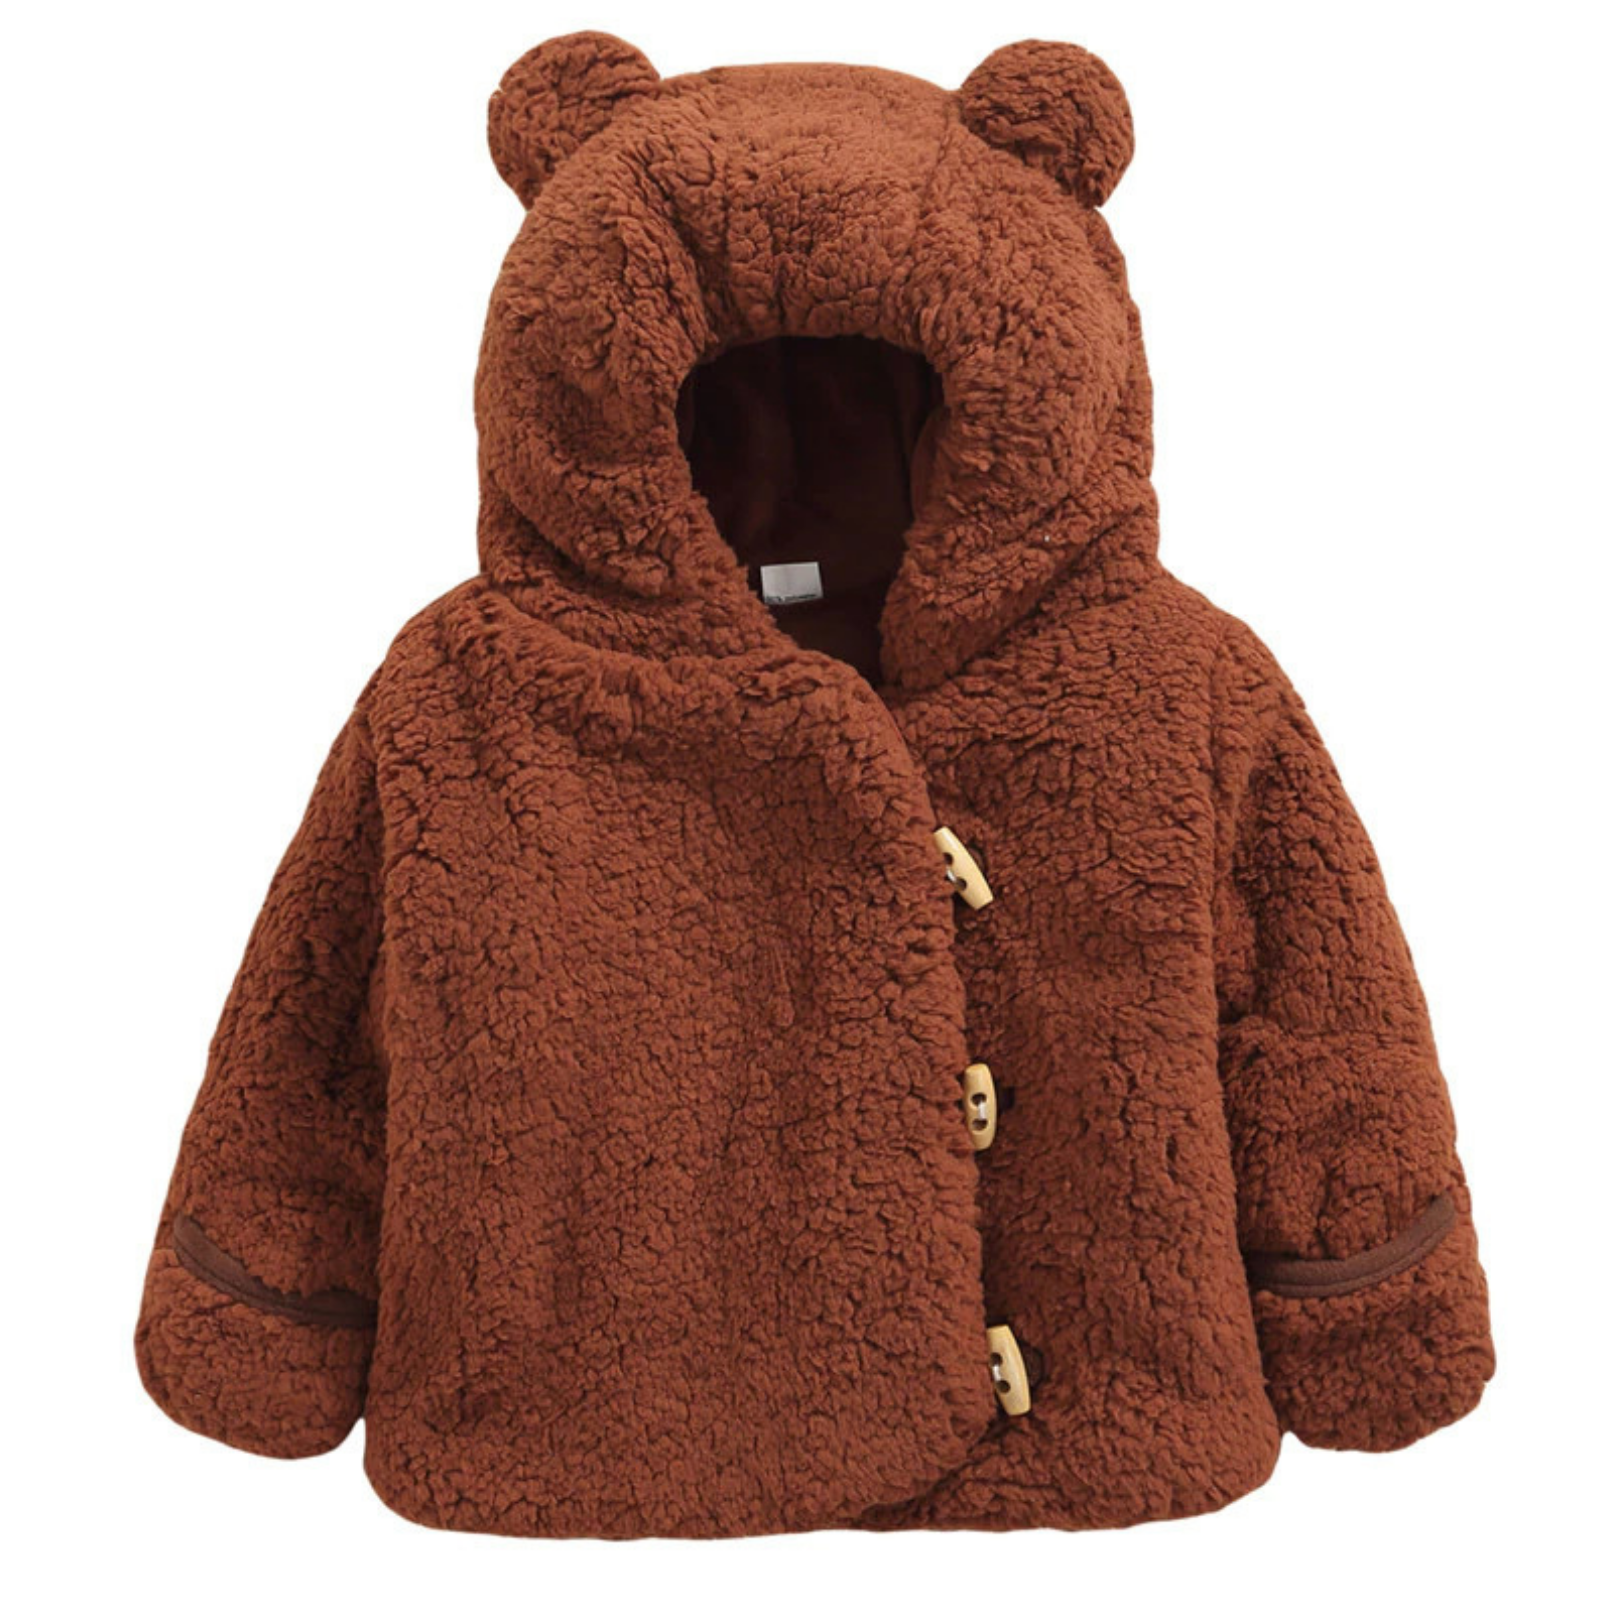 Bear Plush Baby Cardigan